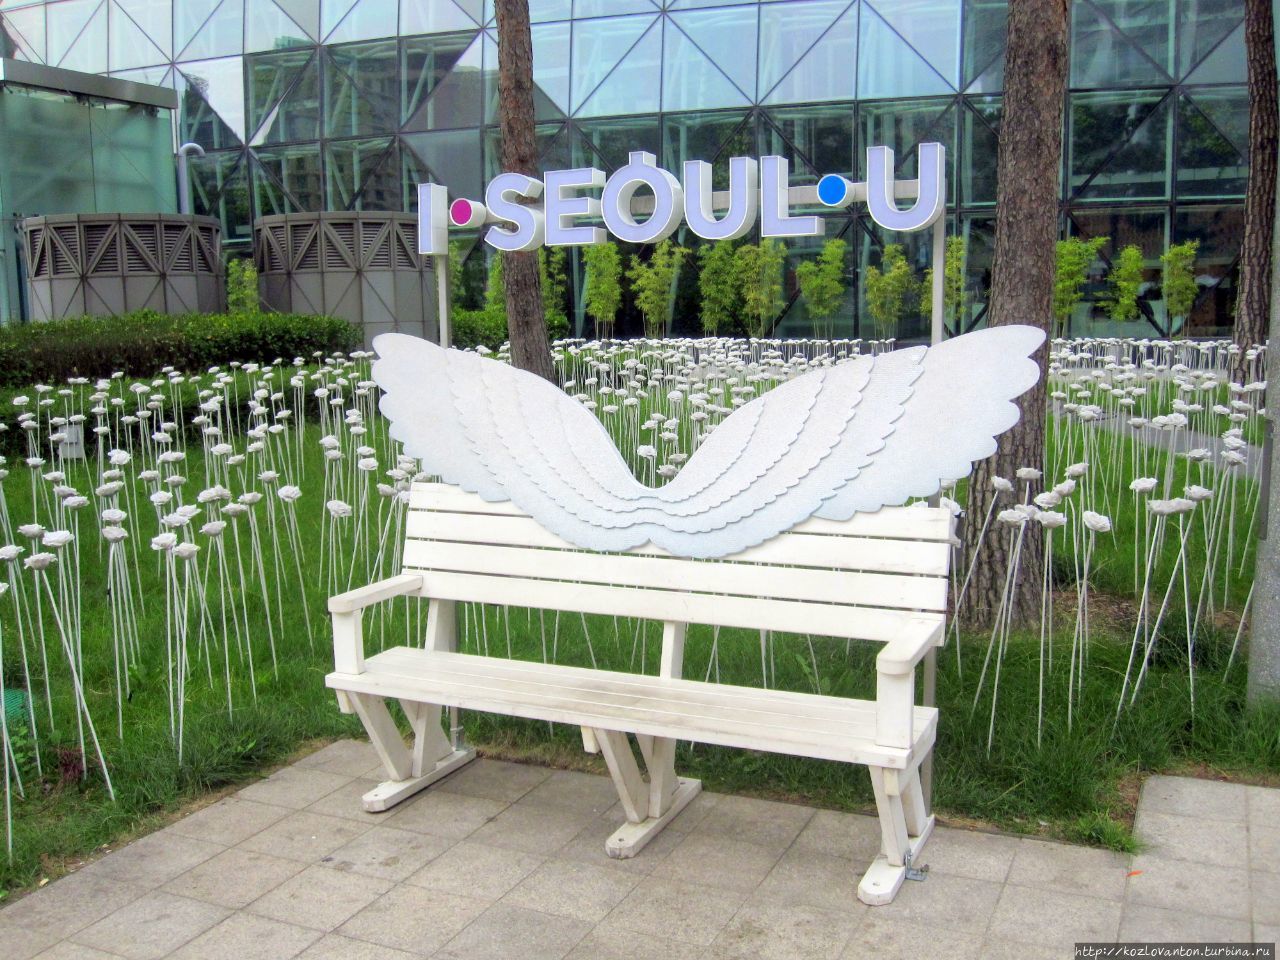 Примерить на себя ангельские крылья можно и у Сити-холла. Сеул, Республика Корея